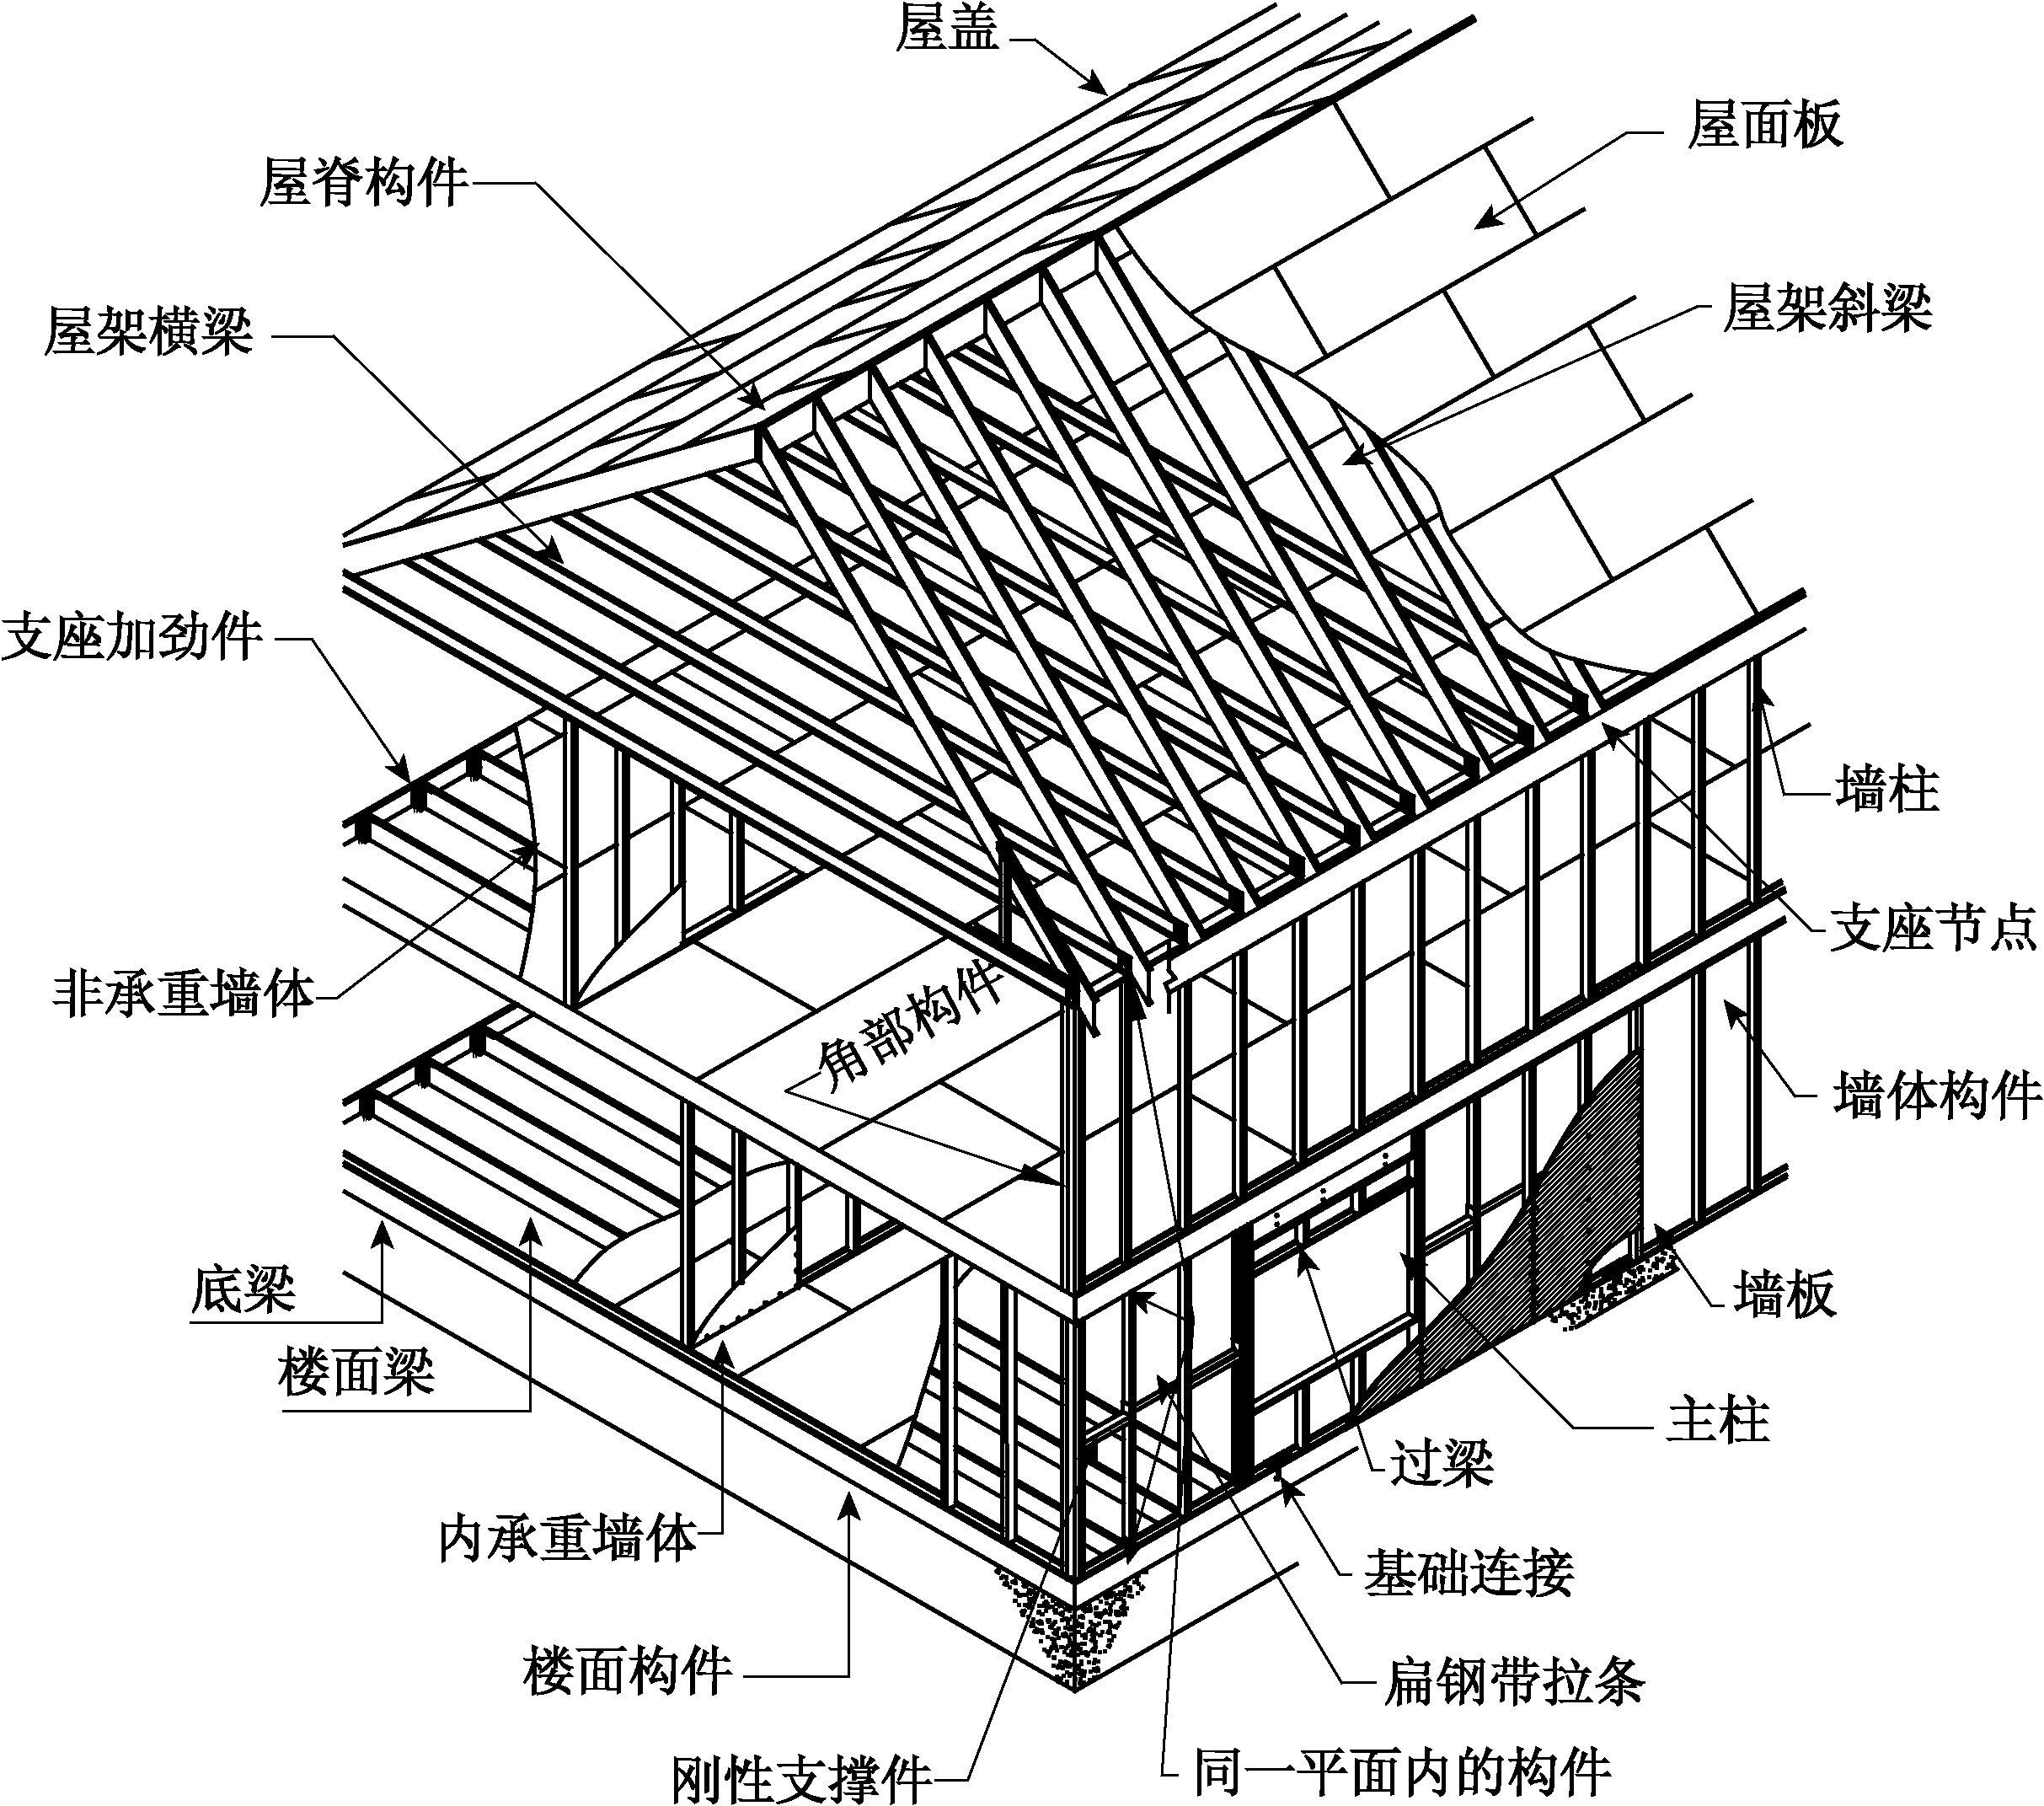 21 低层冷弯薄壁型钢房屋体系